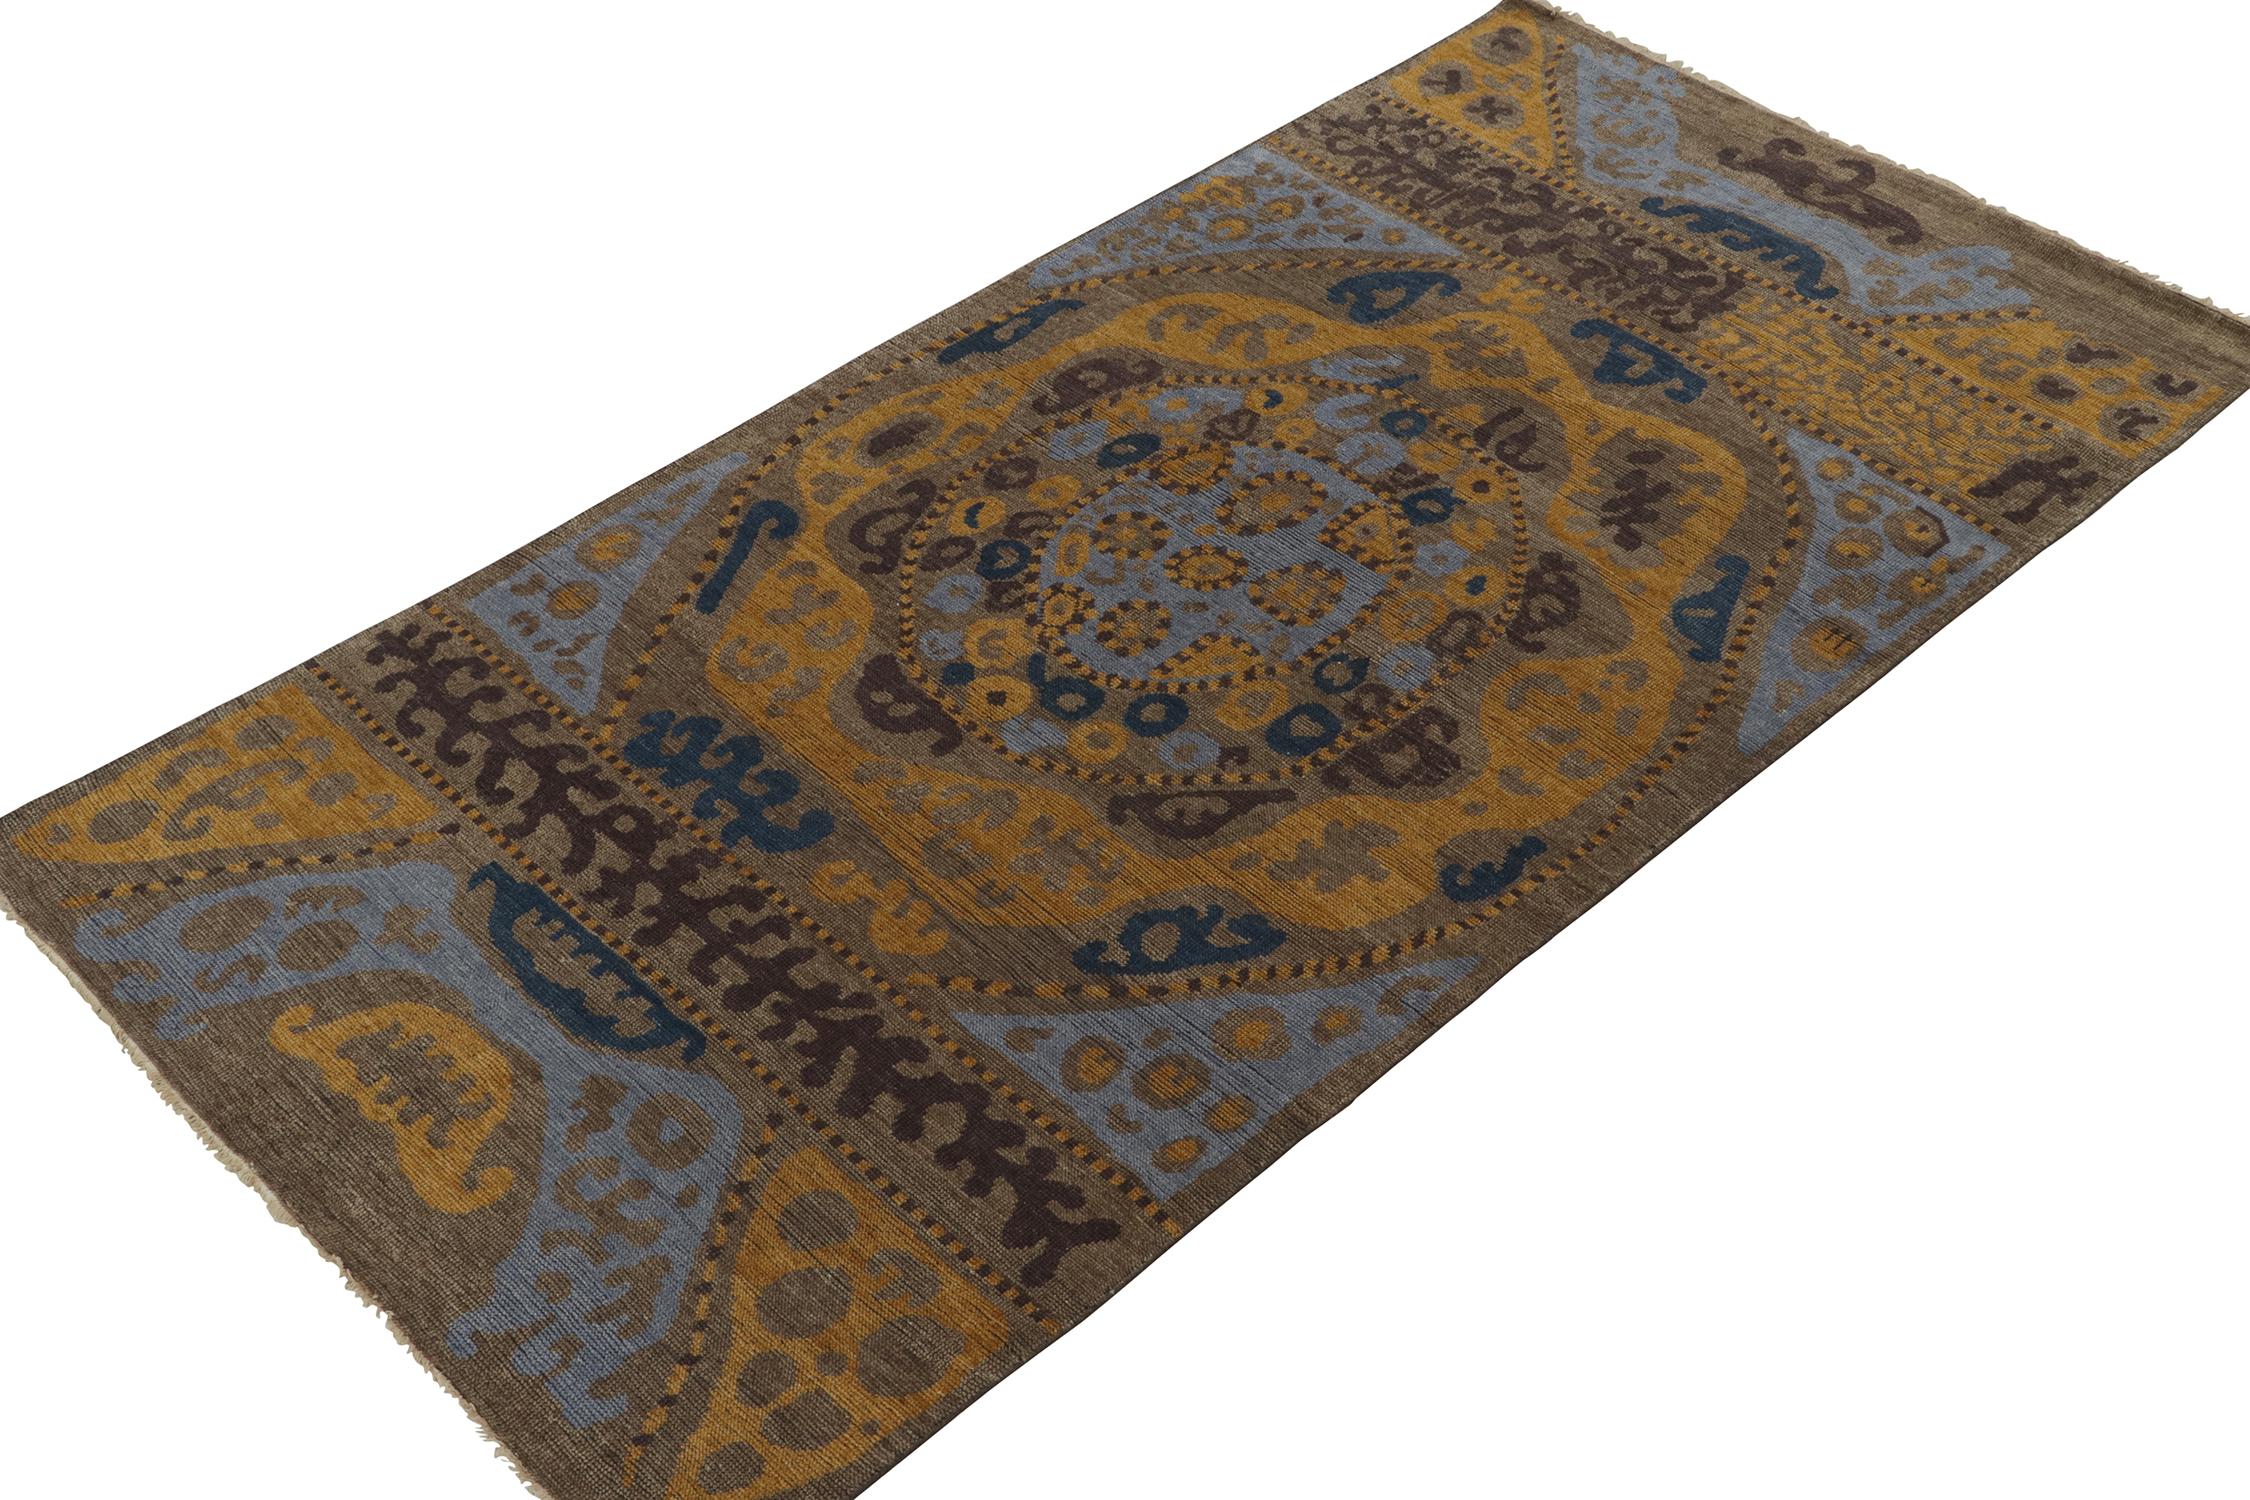 Ce tapis de 5x10 est une nouvelle entrée grandiose dans la collection classique personnalisée Burano de Rug & Kilim. Noué à la main en laine persane.
Plus loin dans le Design : 
Cette pièce s'inspire des textiles tribaux et se délecte d'un brun